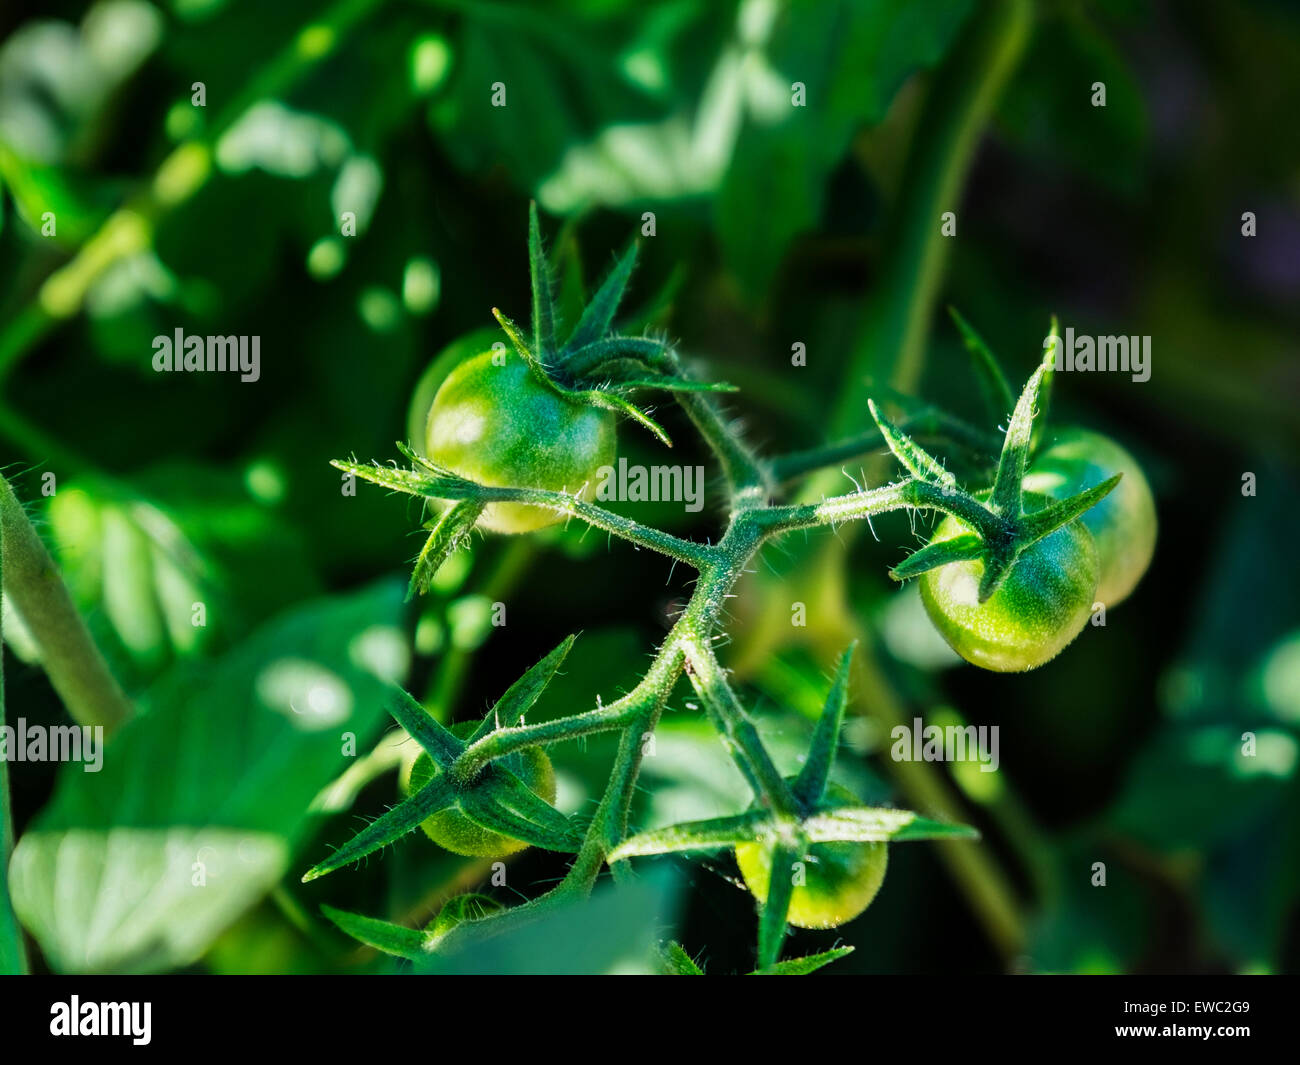 Un plant de tomate avec de nouvelles petites tomates vertes, Solanum lycopersicum. USA. Accueil cultivé et organique. Banque D'Images